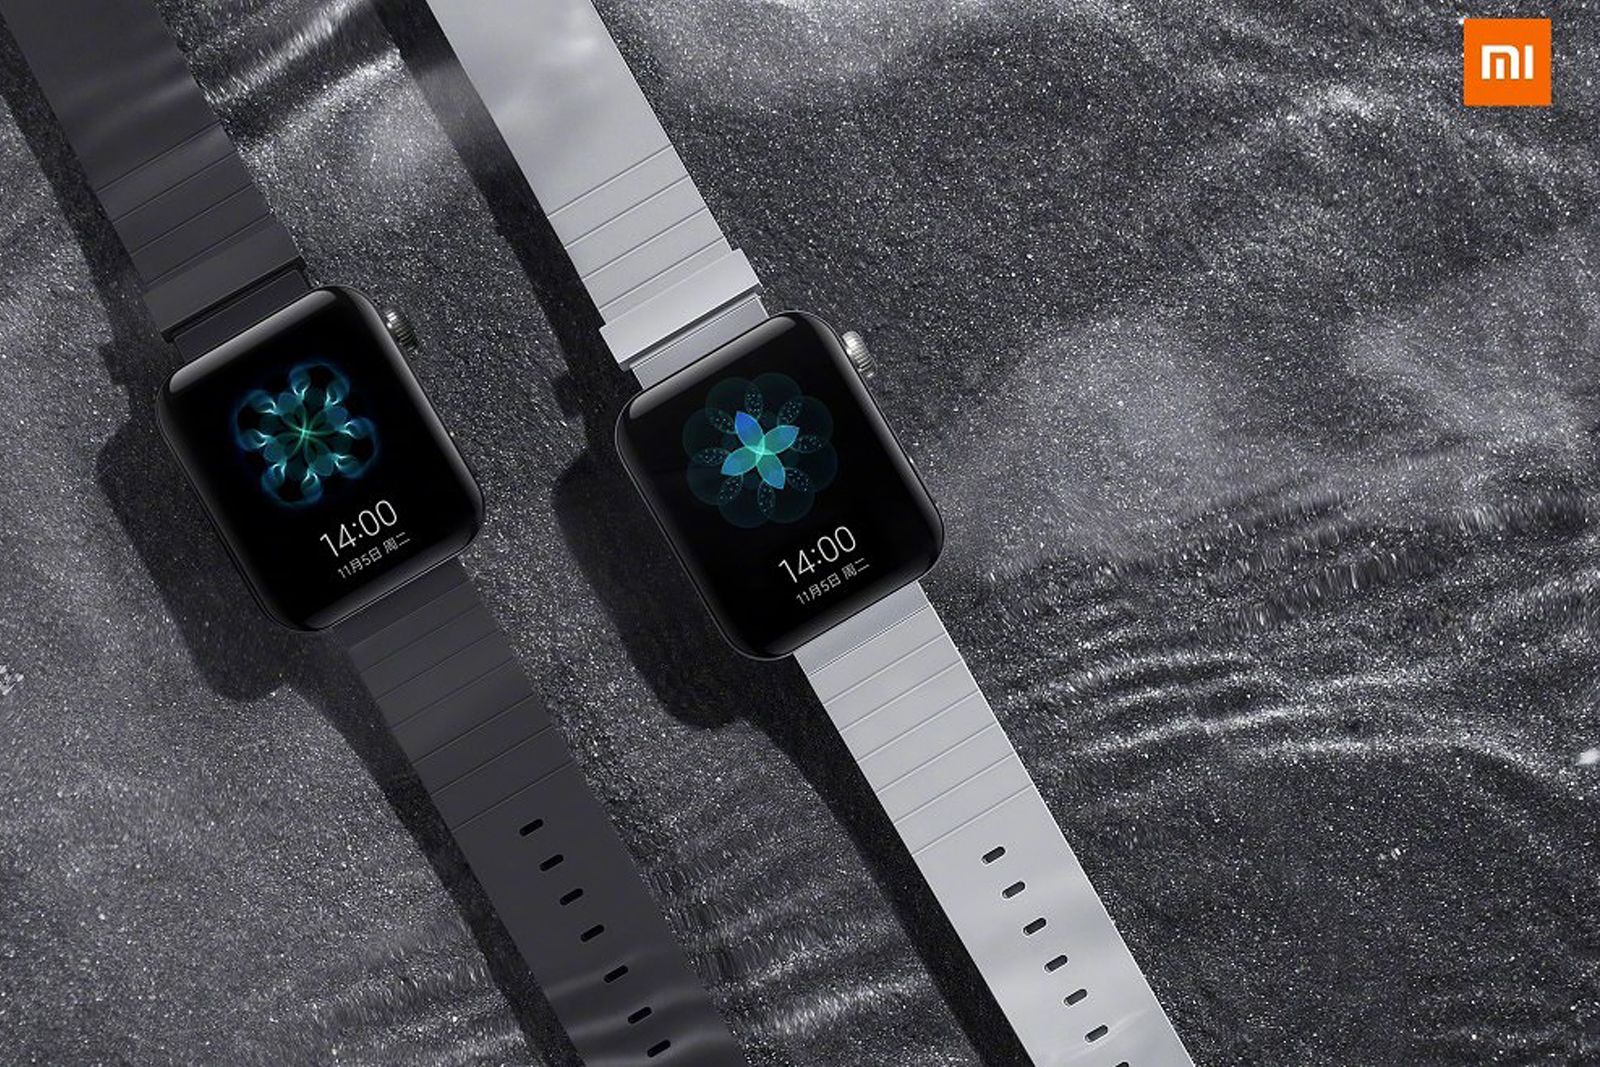 Xiaomi Mi Watch smartwatch looks a lot like the Apple Watch image 1